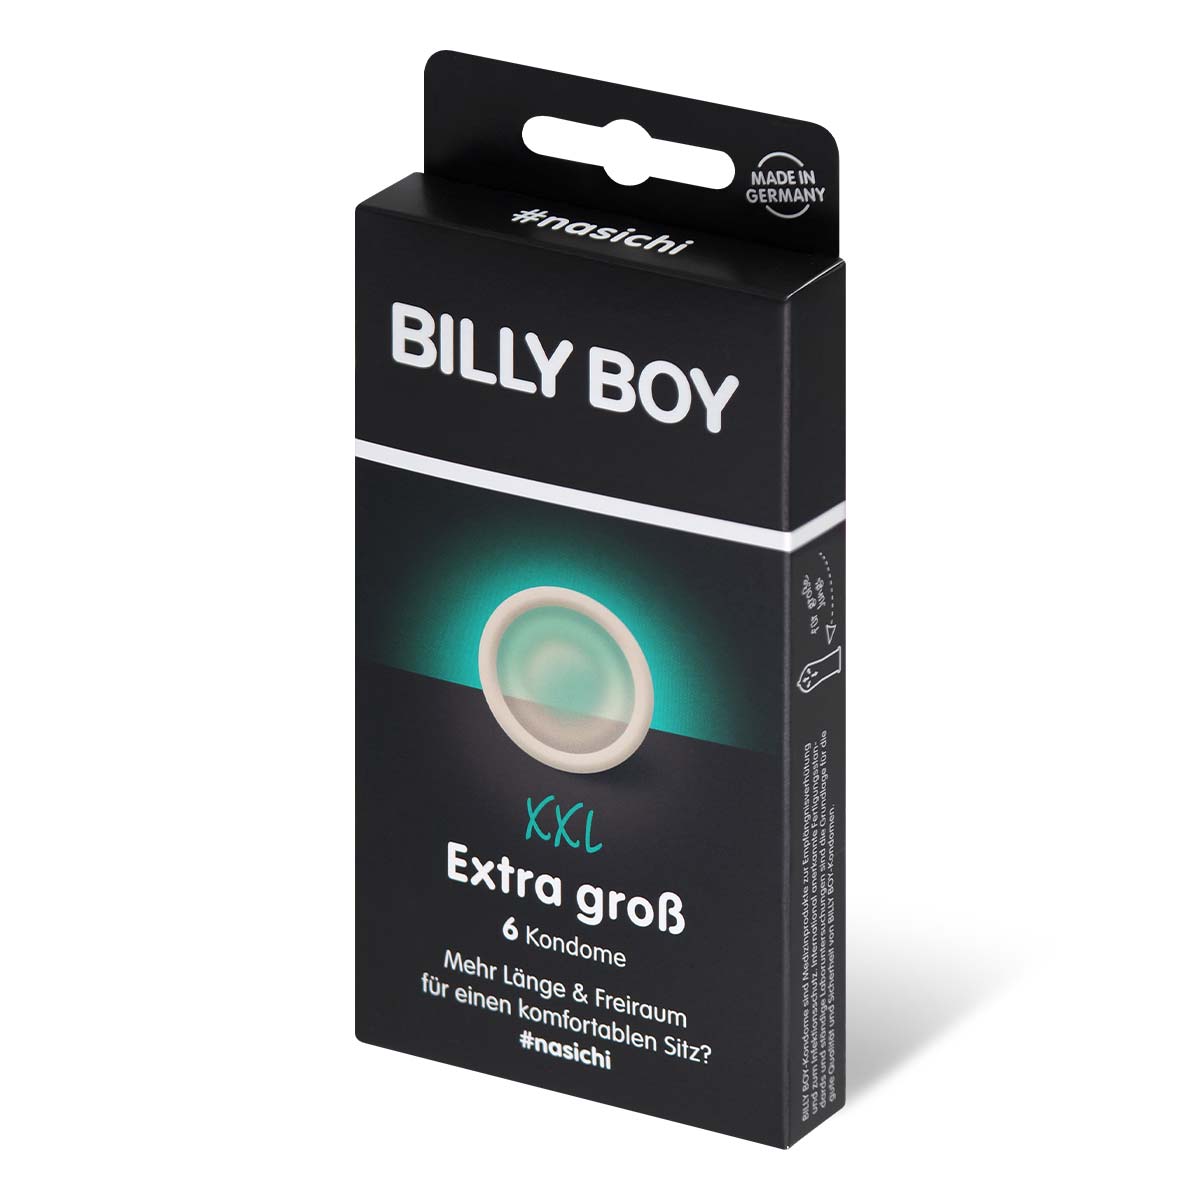 BILLY BOY 加大碼 6 片裝 乳膠安全套-p_1